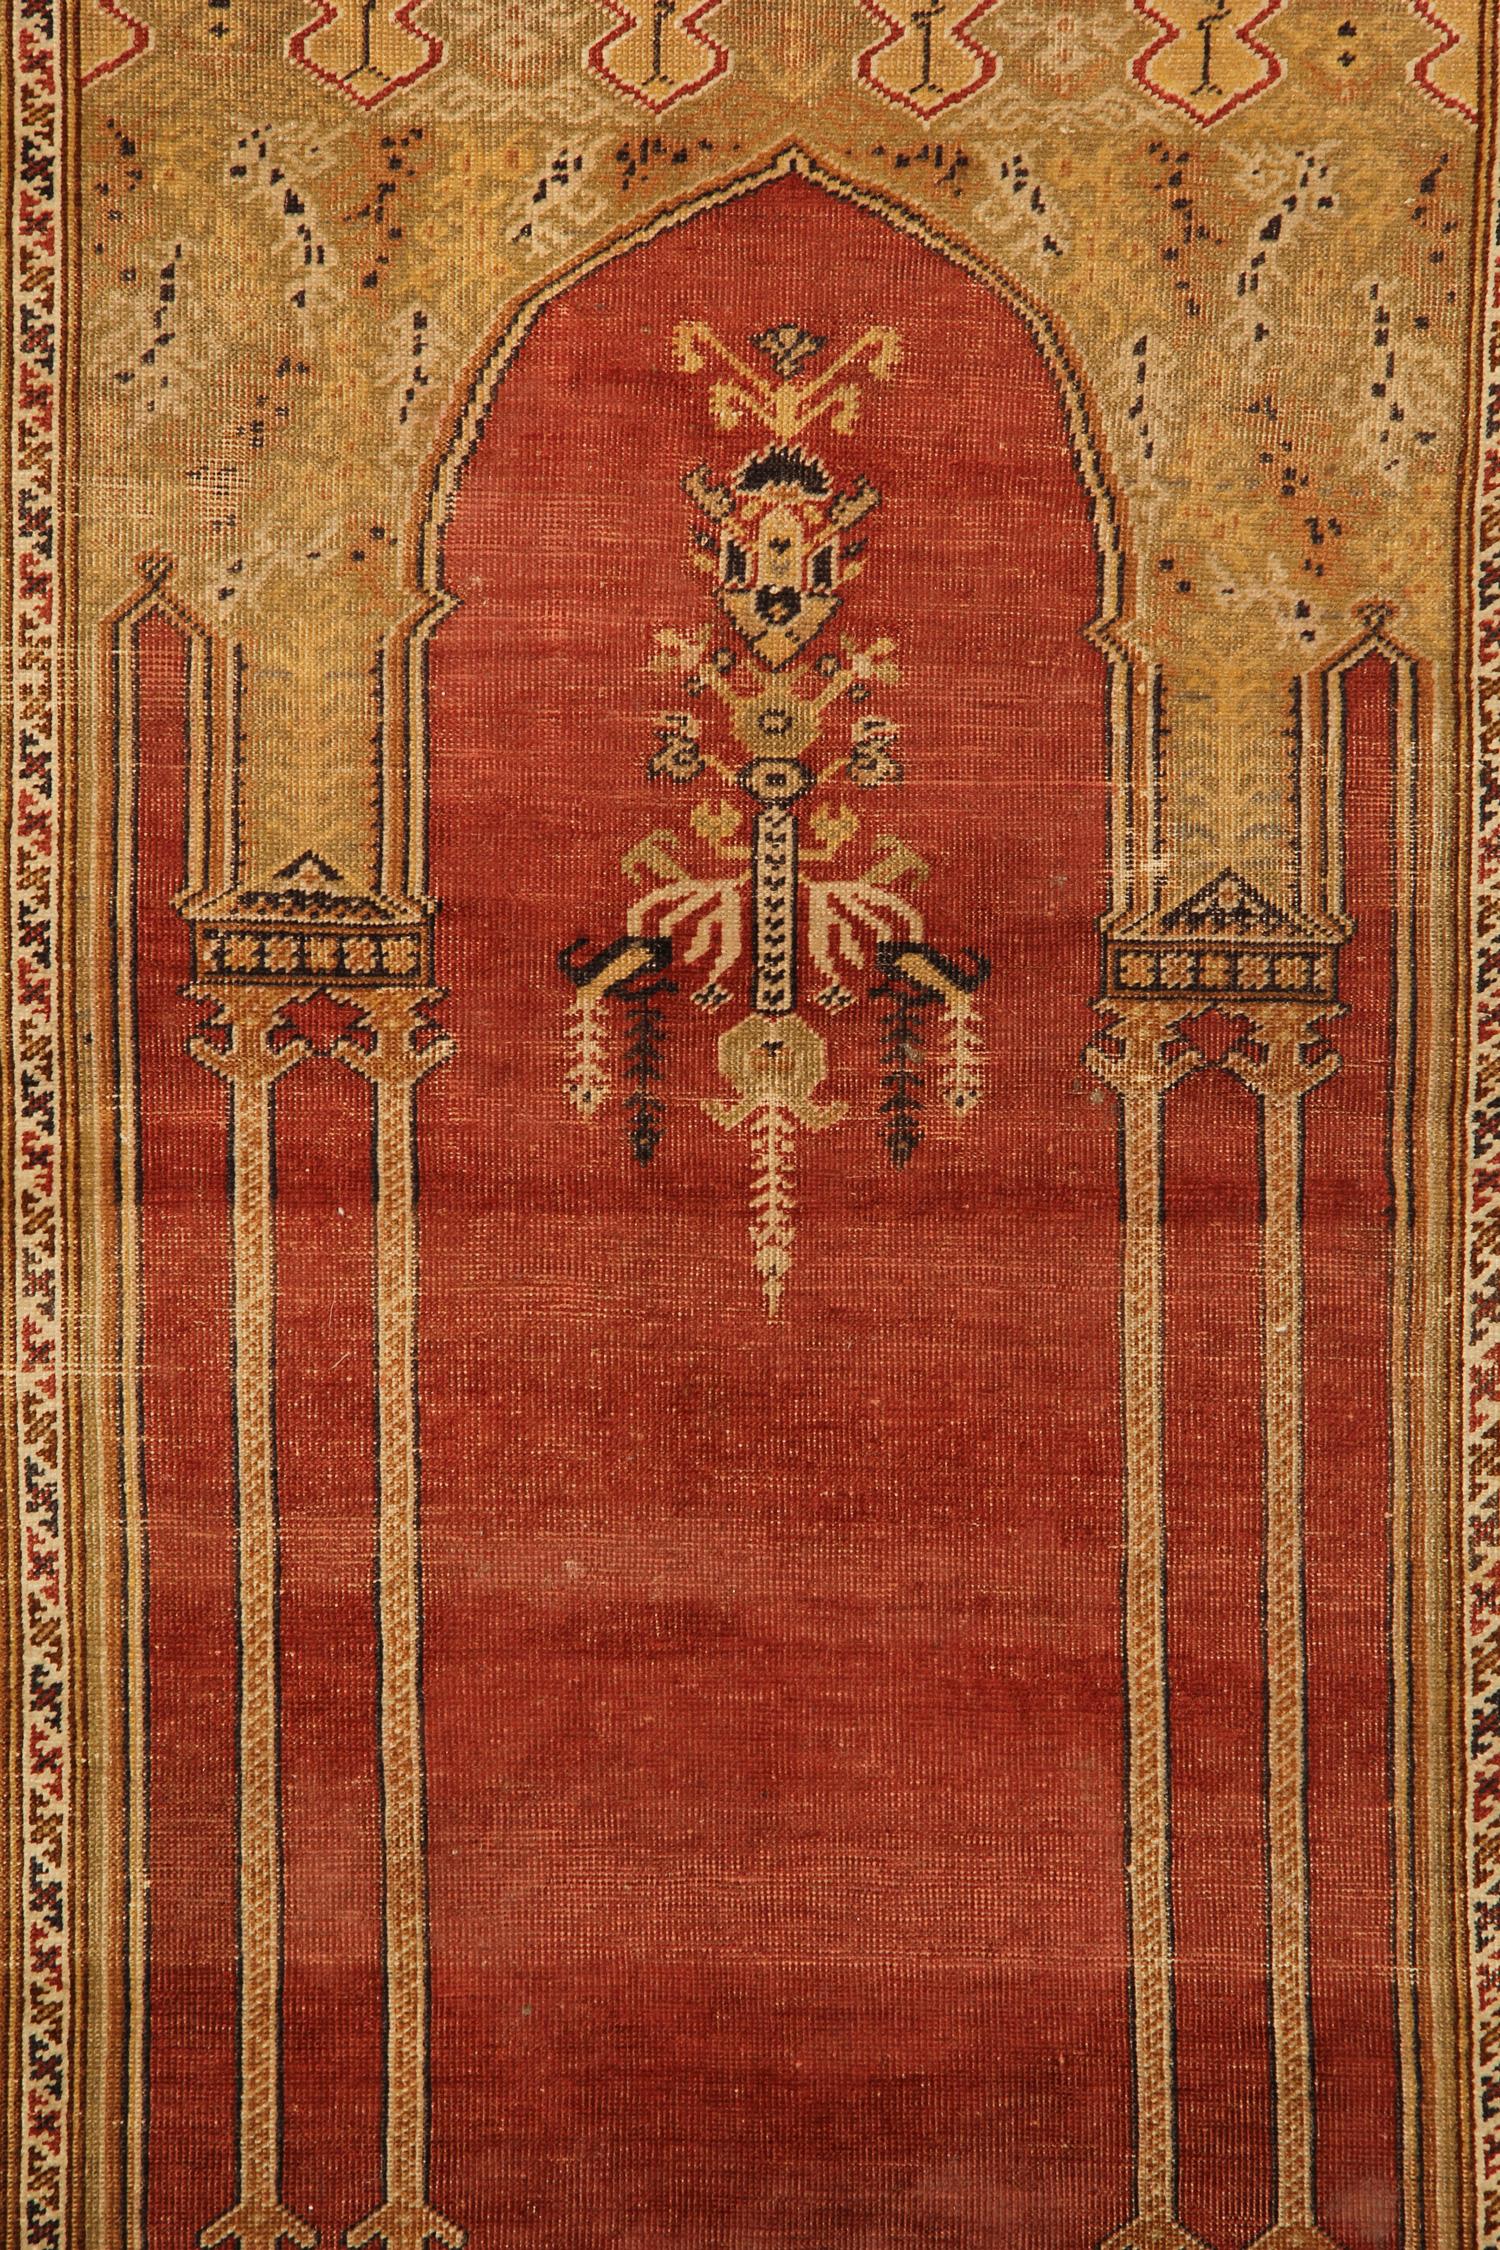 Le motif de ce tapis est très caractéristique et est connu comme un motif de prière depuis plus de mille ans. La connotation de ce design remonte à la Perse préislamique, où le plan architectural a été inventé et mis en œuvre par des dessinateurs